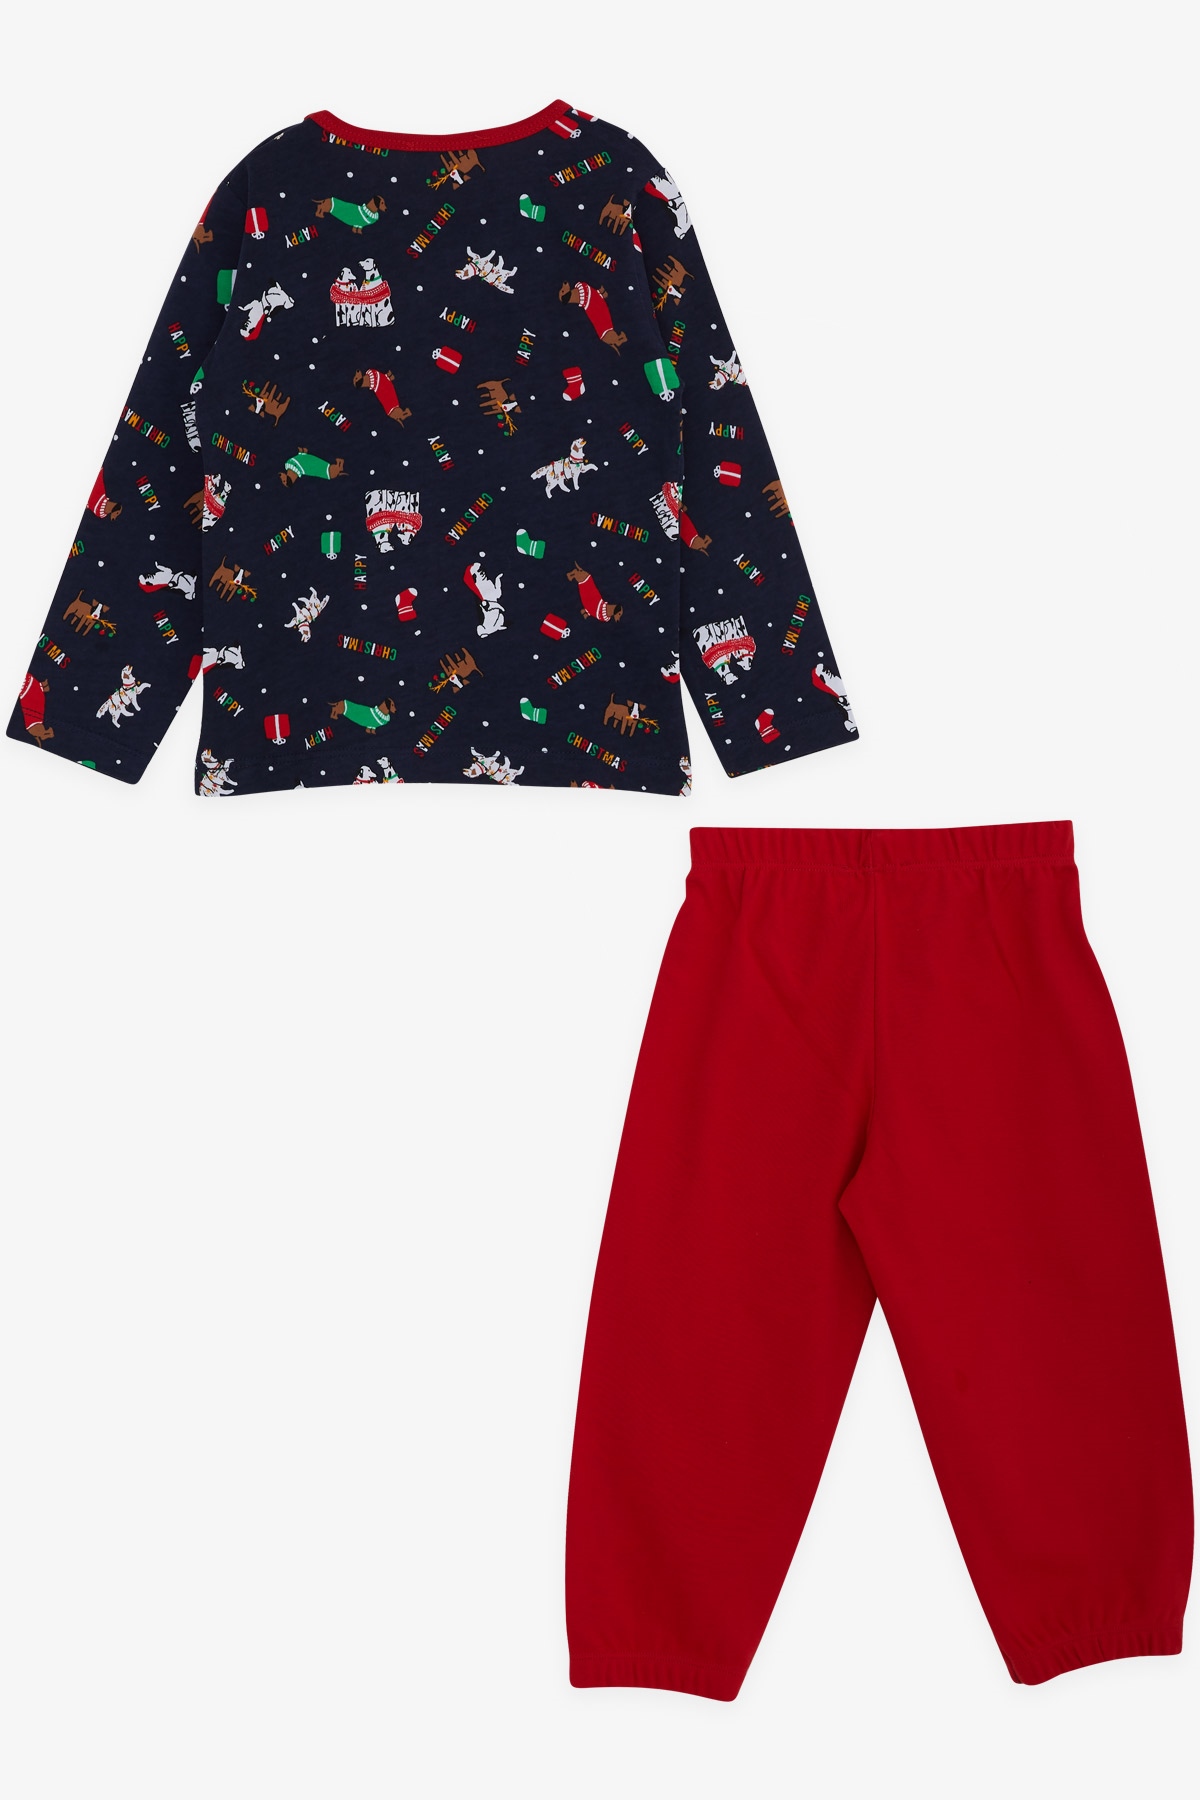 Erkek Bebek Pijama Takımı Yılbaşı Temalı Lacivert 9 Ay-3 Yaş - Yumuşak  Kumaşlı Çocuk Pijamaları | Breeze